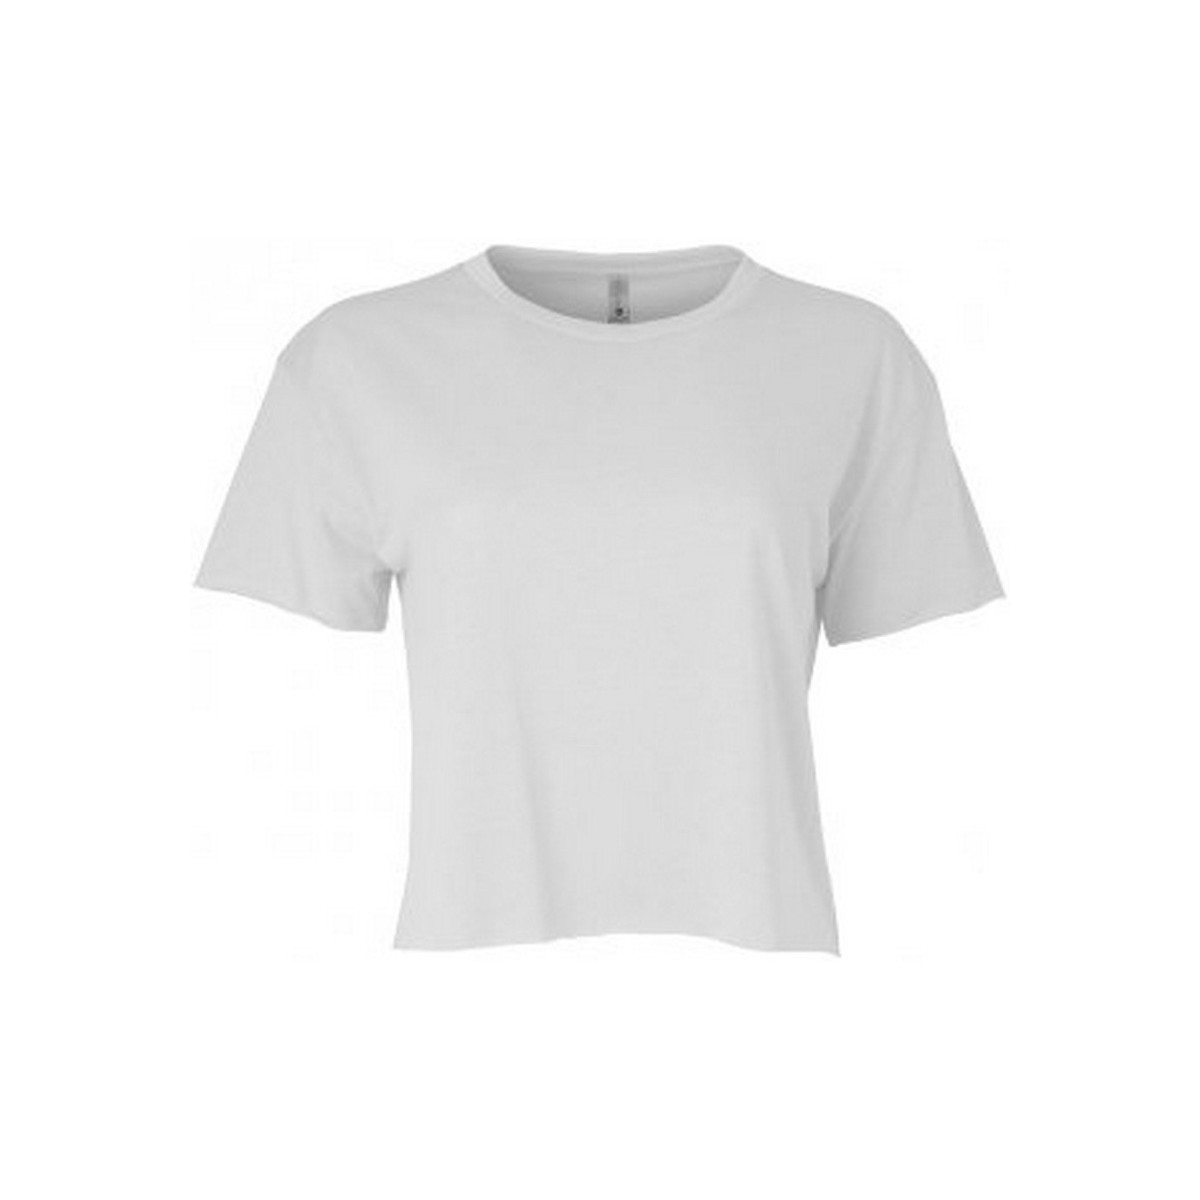 Vêtements Femme T-shirts manches courtes Next Level Festival Cali Blanc